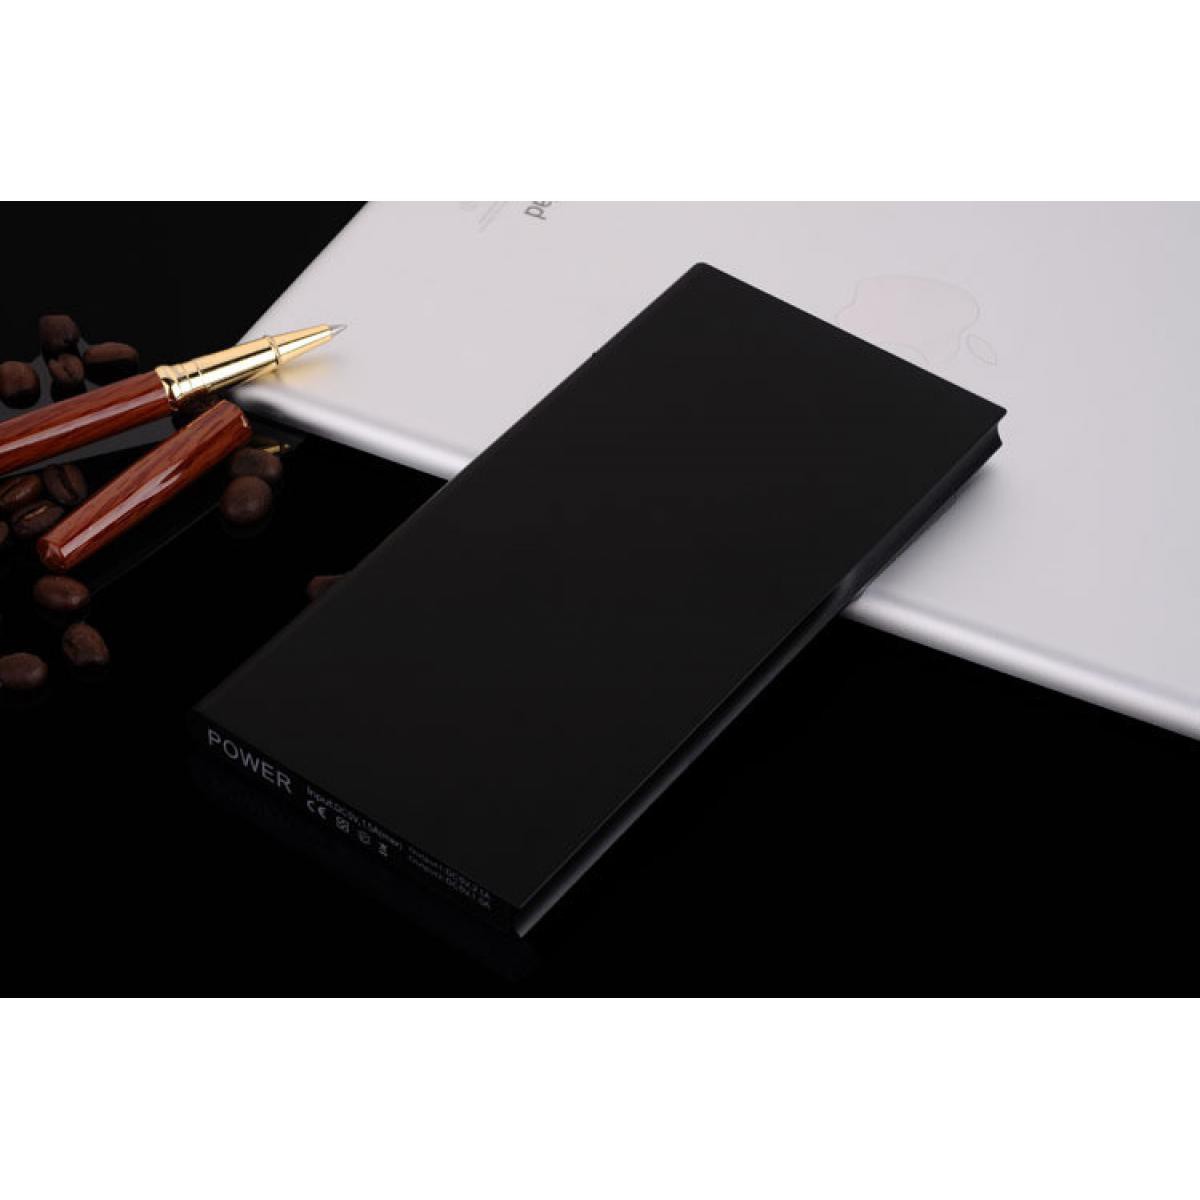 Shot - Batterie Externe Plate pour SONY Xperia L4 Smartphone Tablette Chargeur Power Bank 6000mAh 2 Port USB (NOIR) - Chargeur secteur téléphone